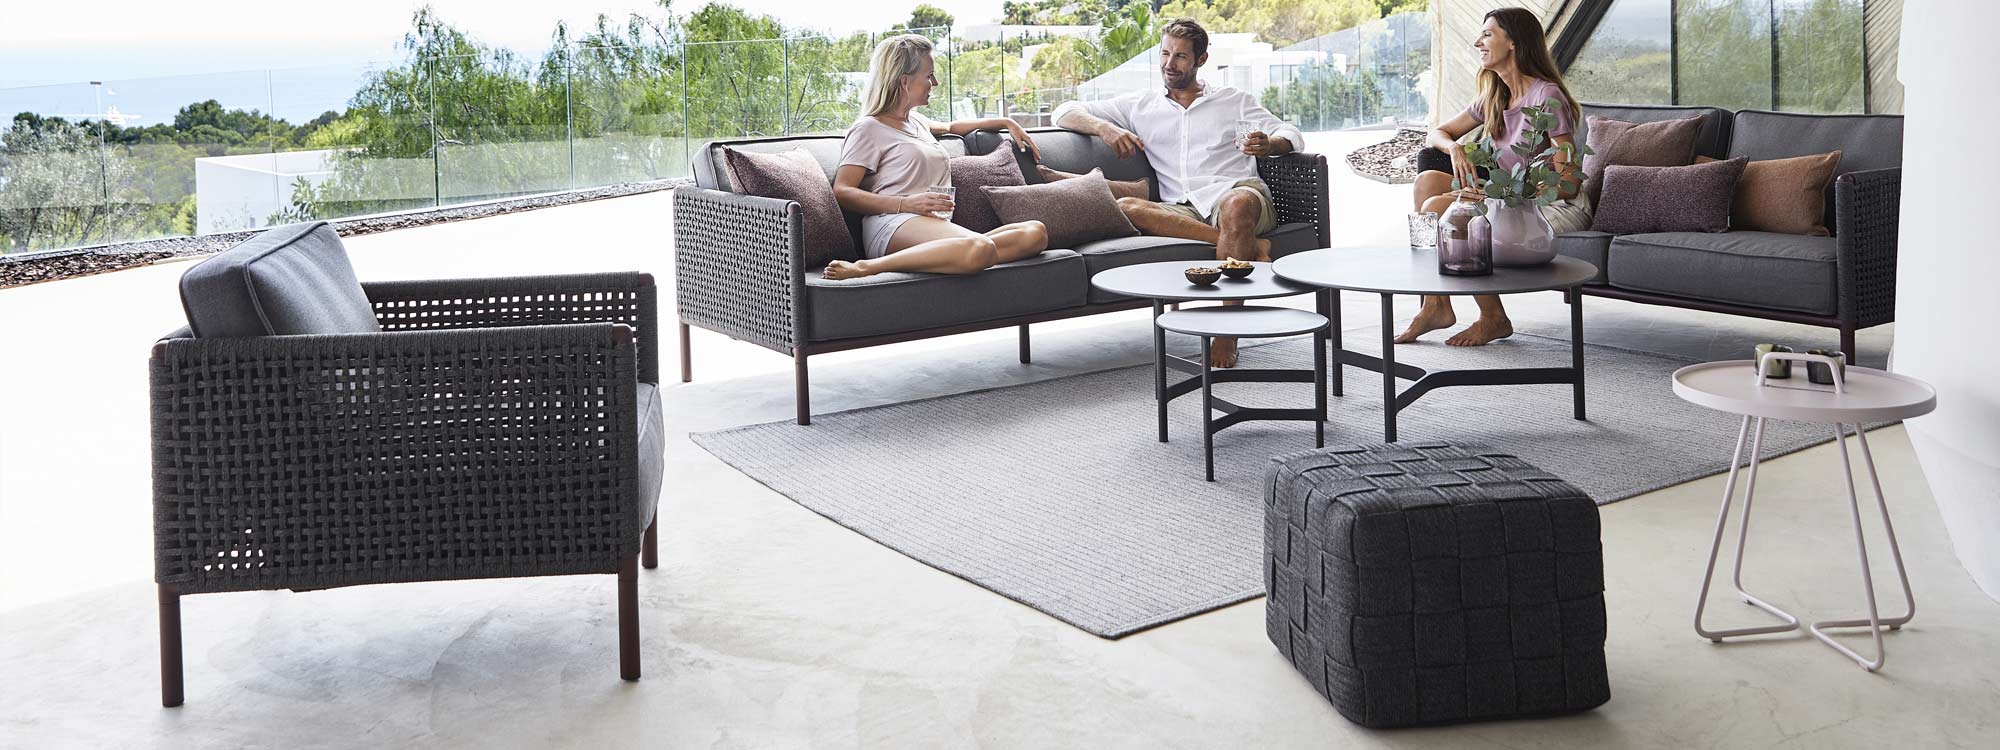 Encore modern garden lounge set includes designer garden sofas in high quality outdoor furniture materials by Caneline luxury garden furniture